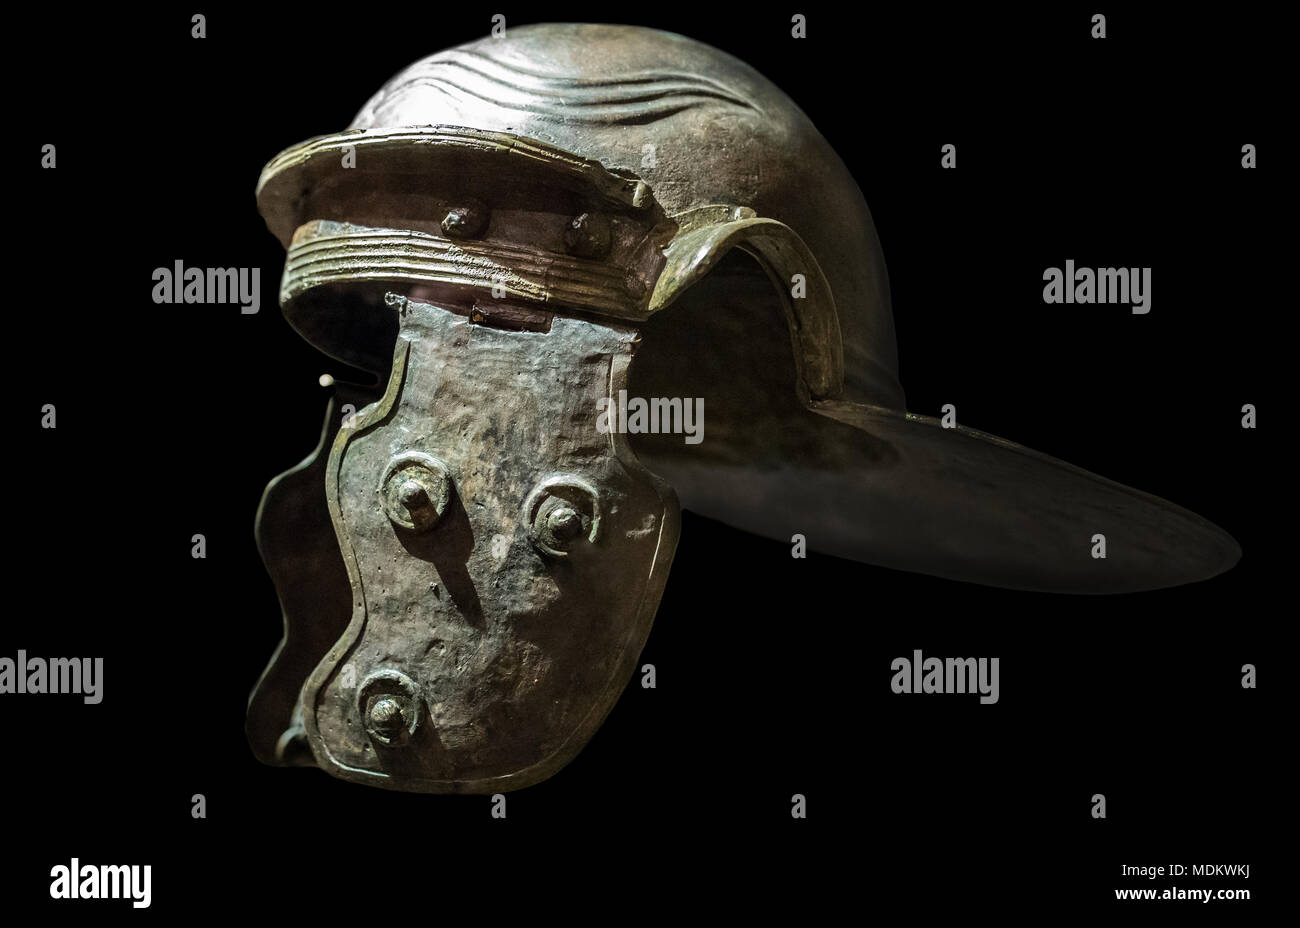 Madrid, Espagne - 11 novembre 2017 : Galea ou casque de soldat romain. Musée Archéologique National de Madrid. Sur fond noir isolé Banque D'Images